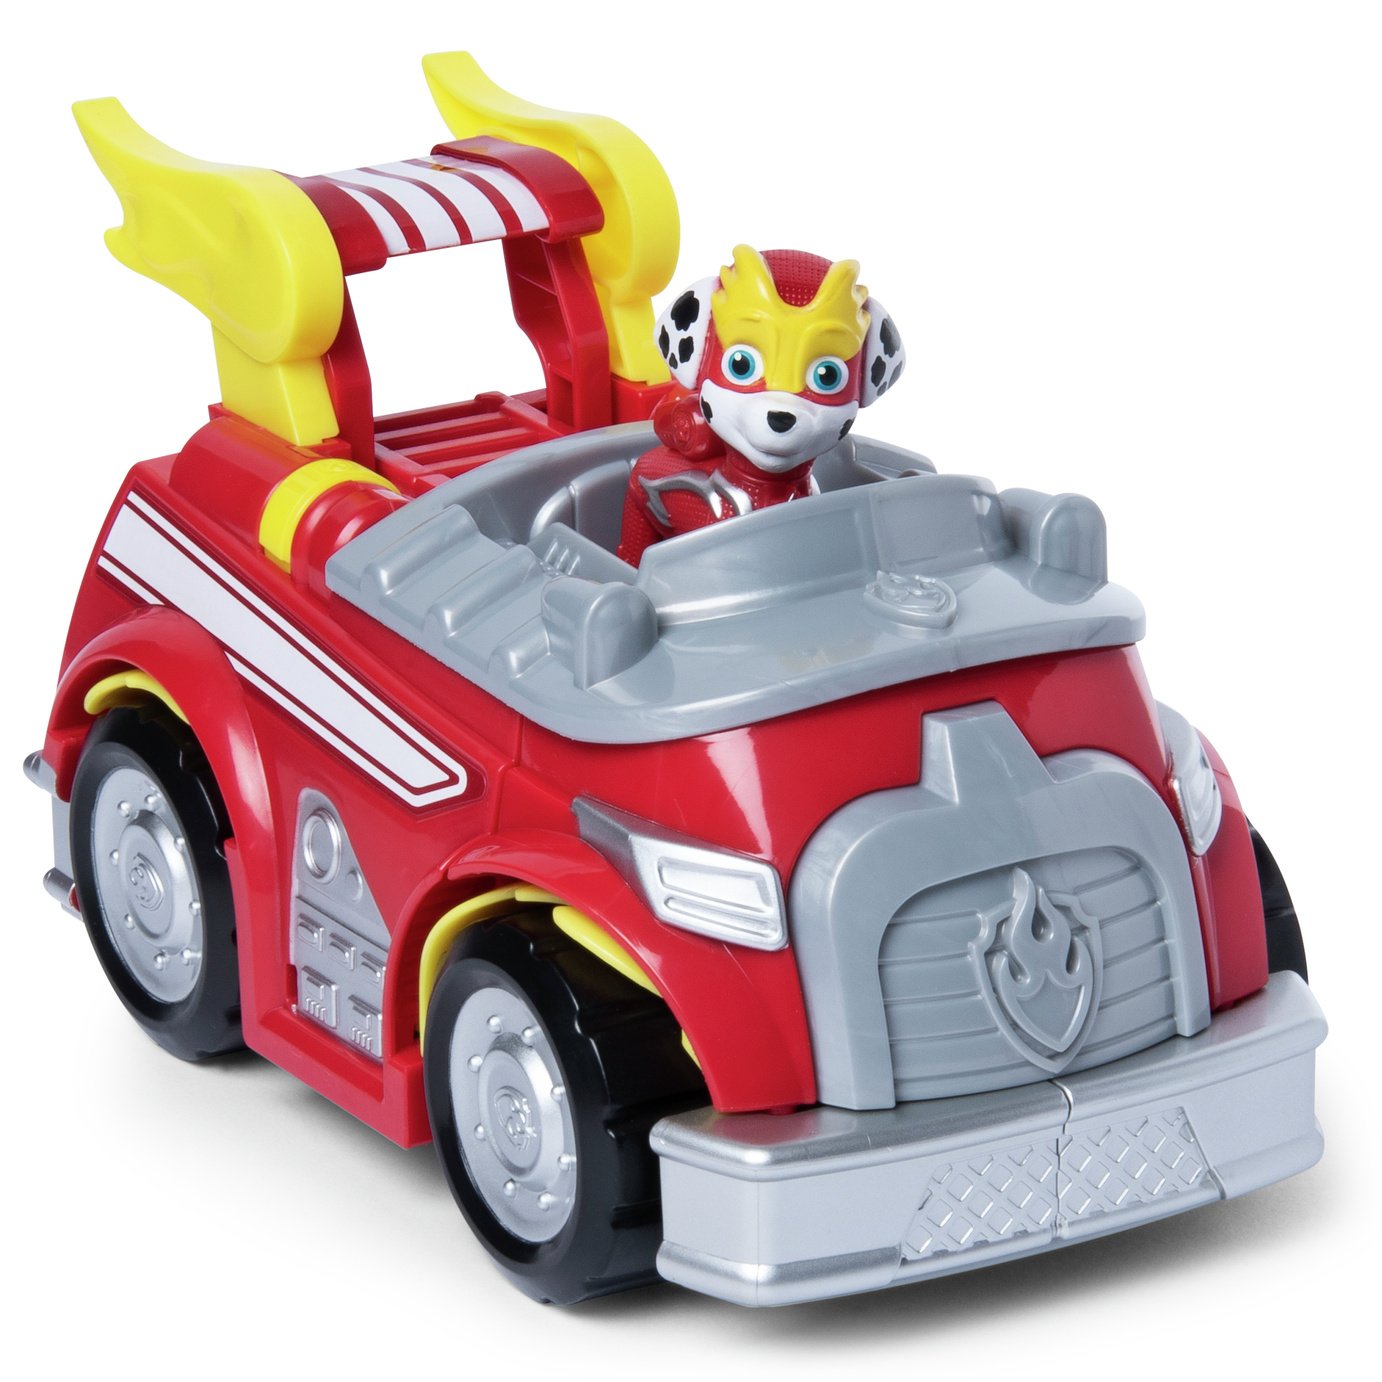 toy fire engine argos